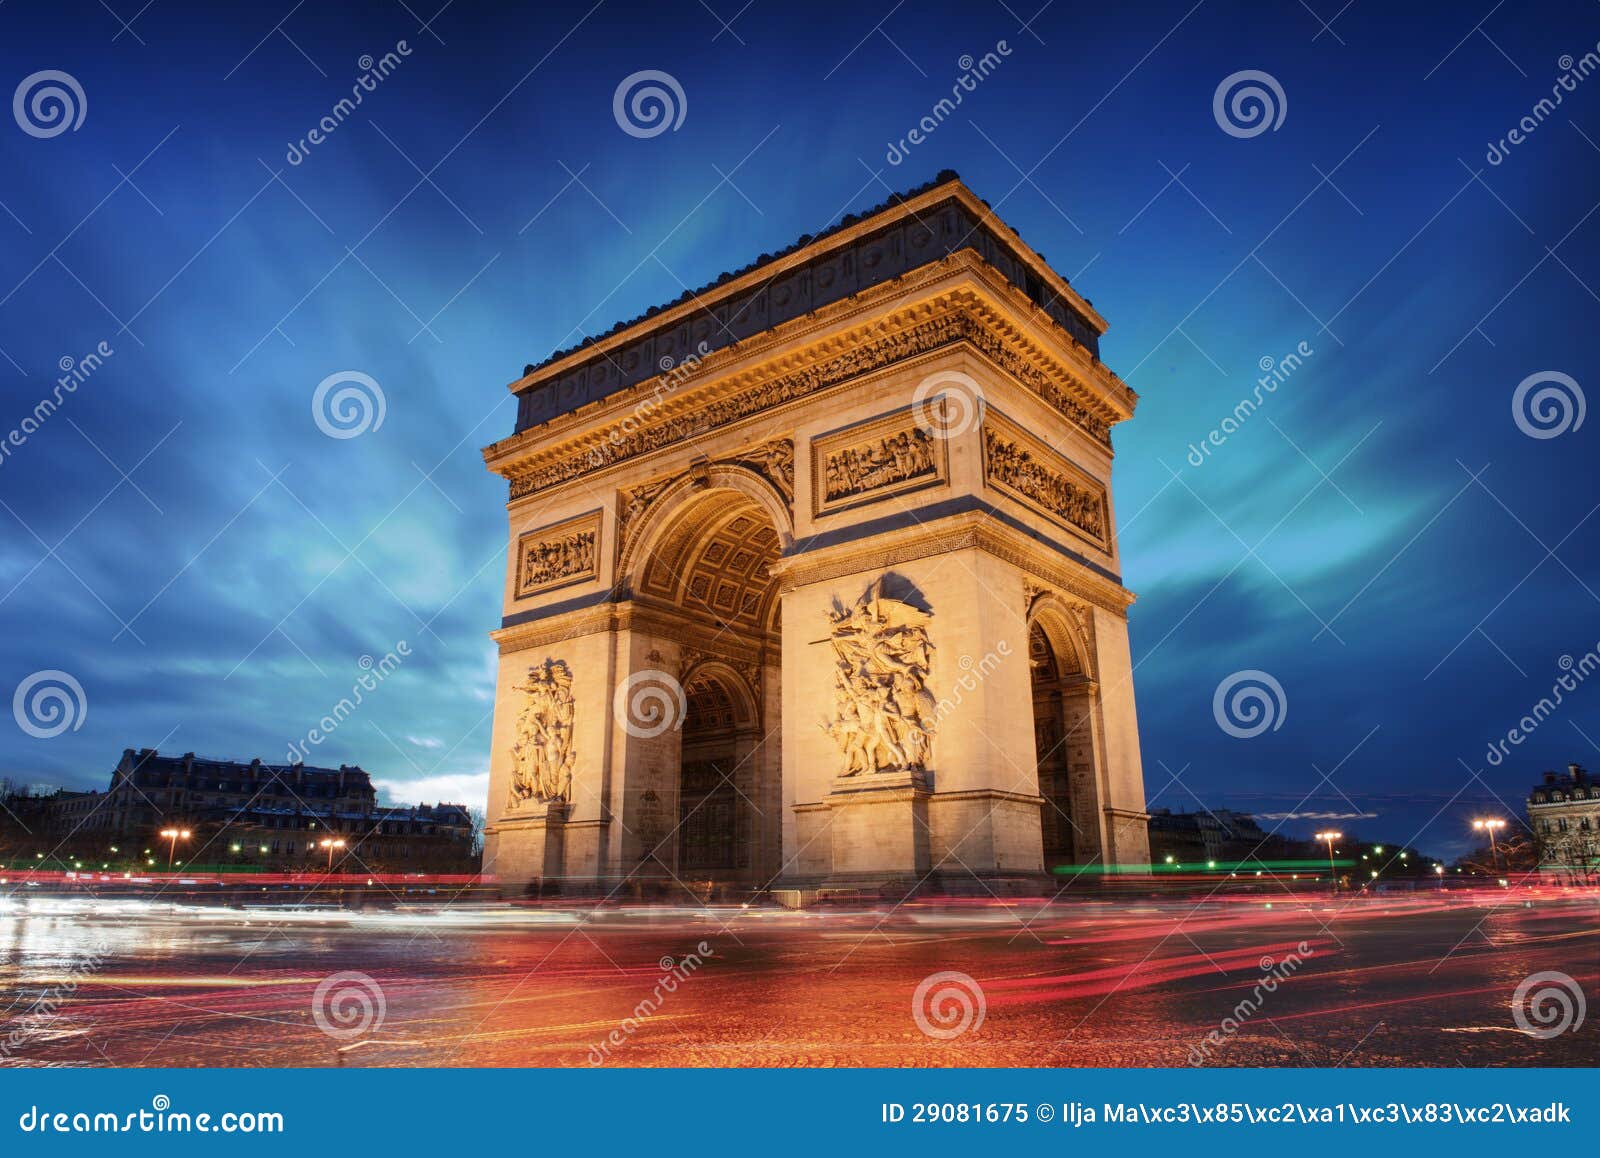 arc de triomphe paris city at sunset